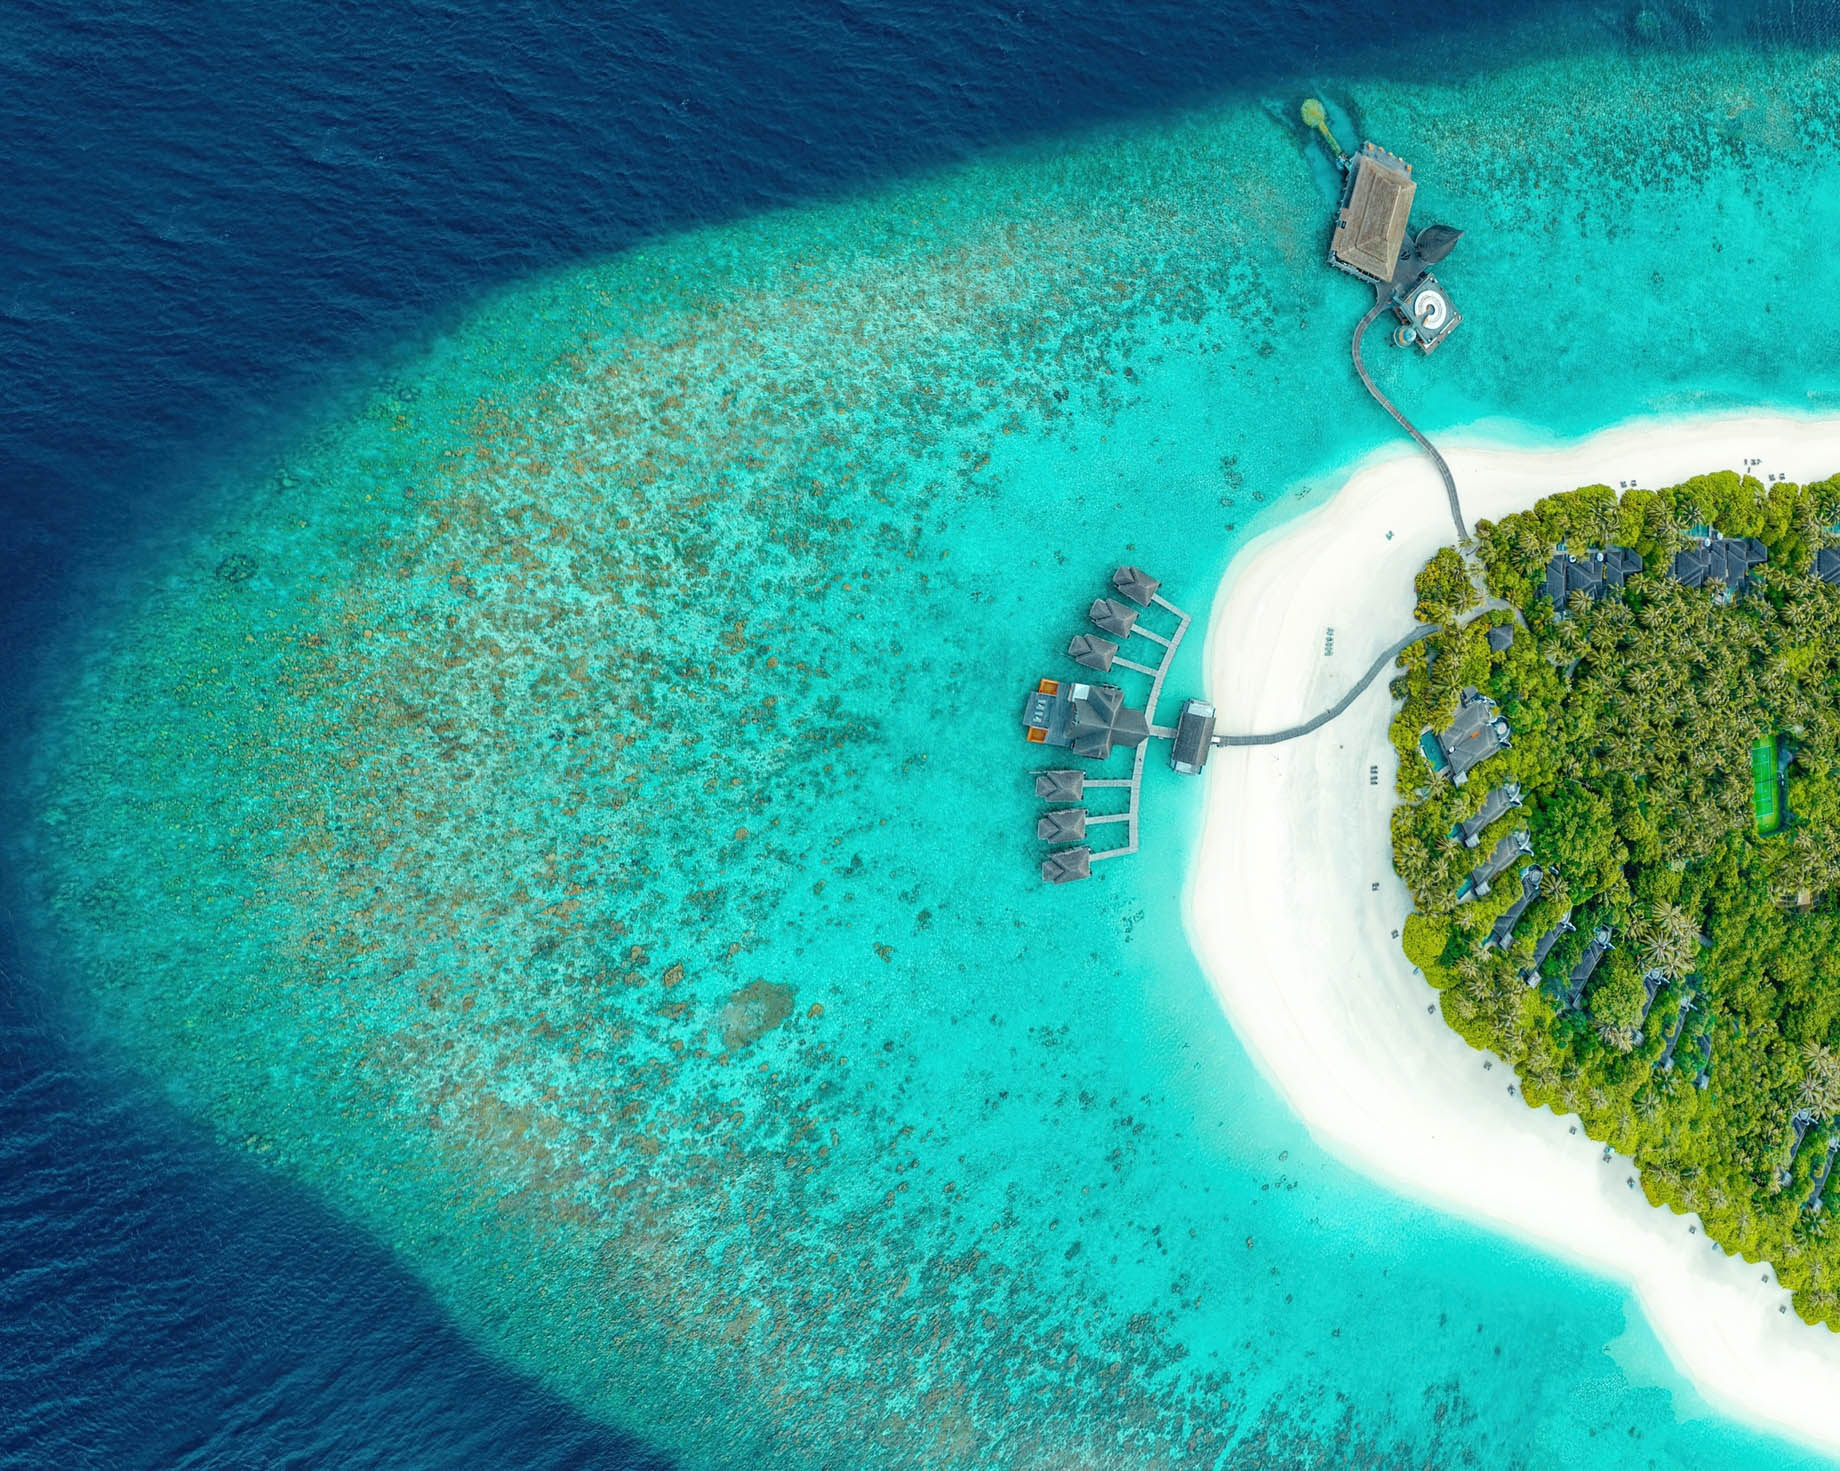 Anantara Kihavah Maldives Villas Resort – Baa Atoll, Maldives – Resort Overhead Aerial View